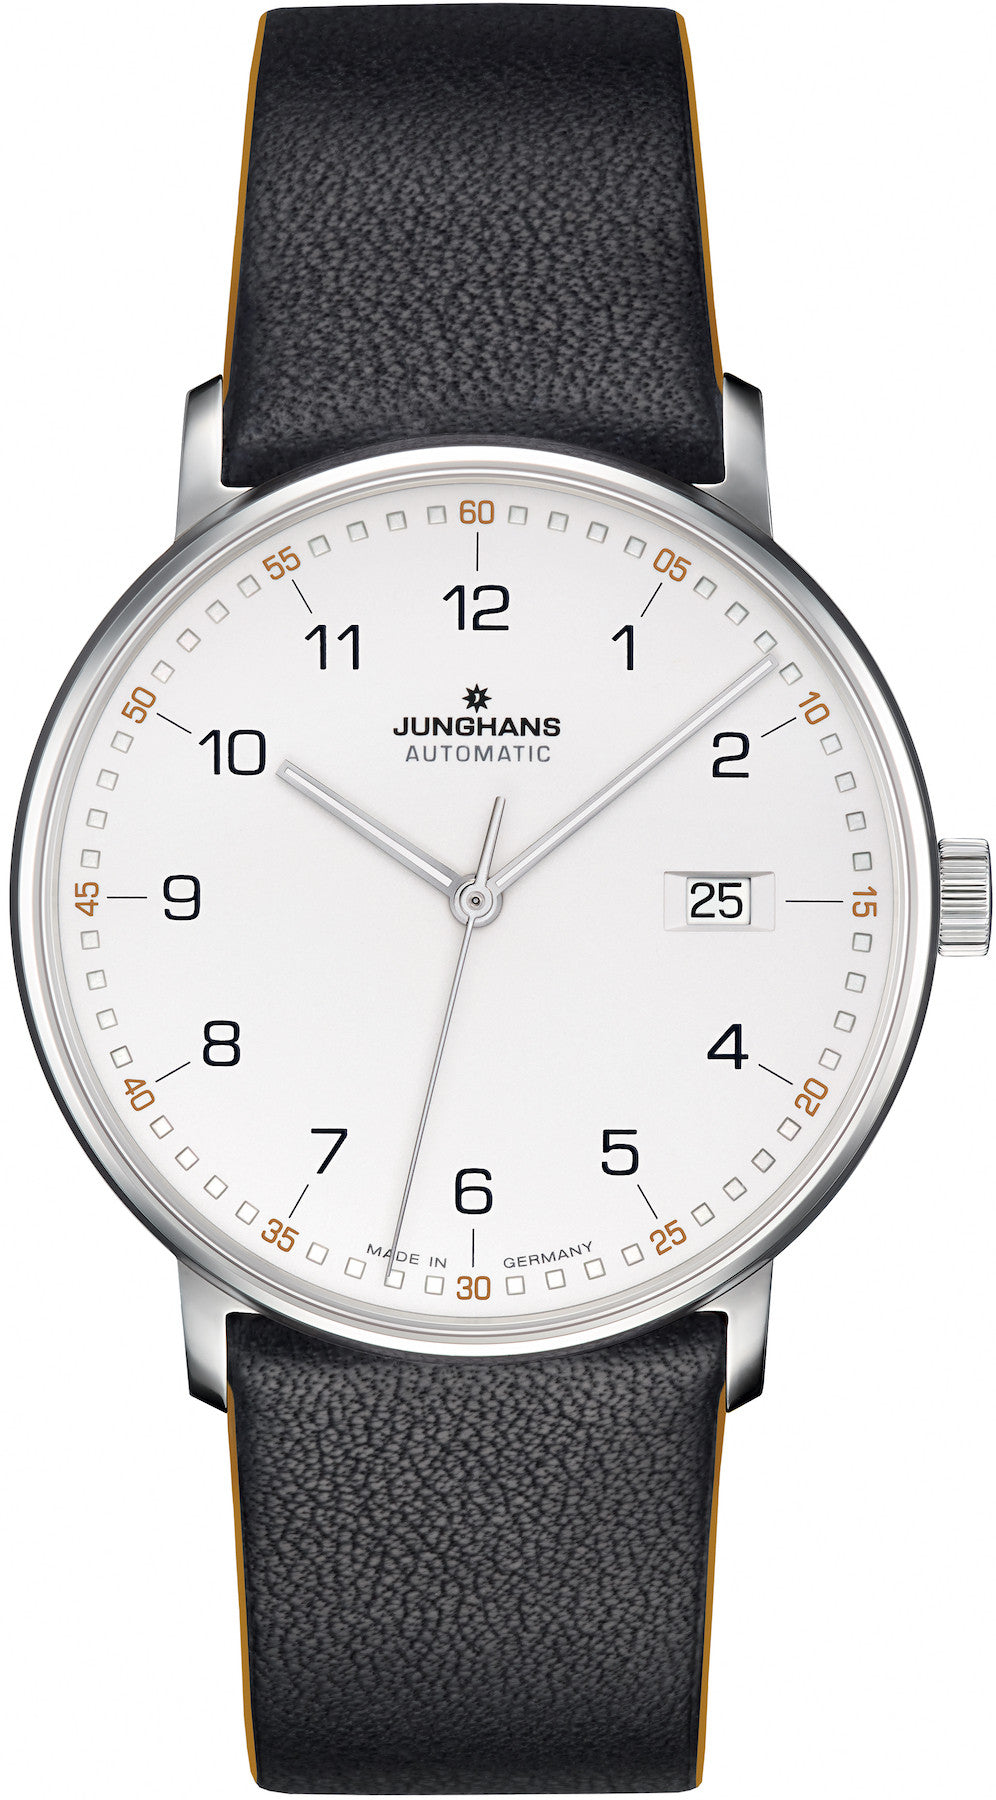 Photos - Wrist Watch Junghans Watch Form A JGH-171 